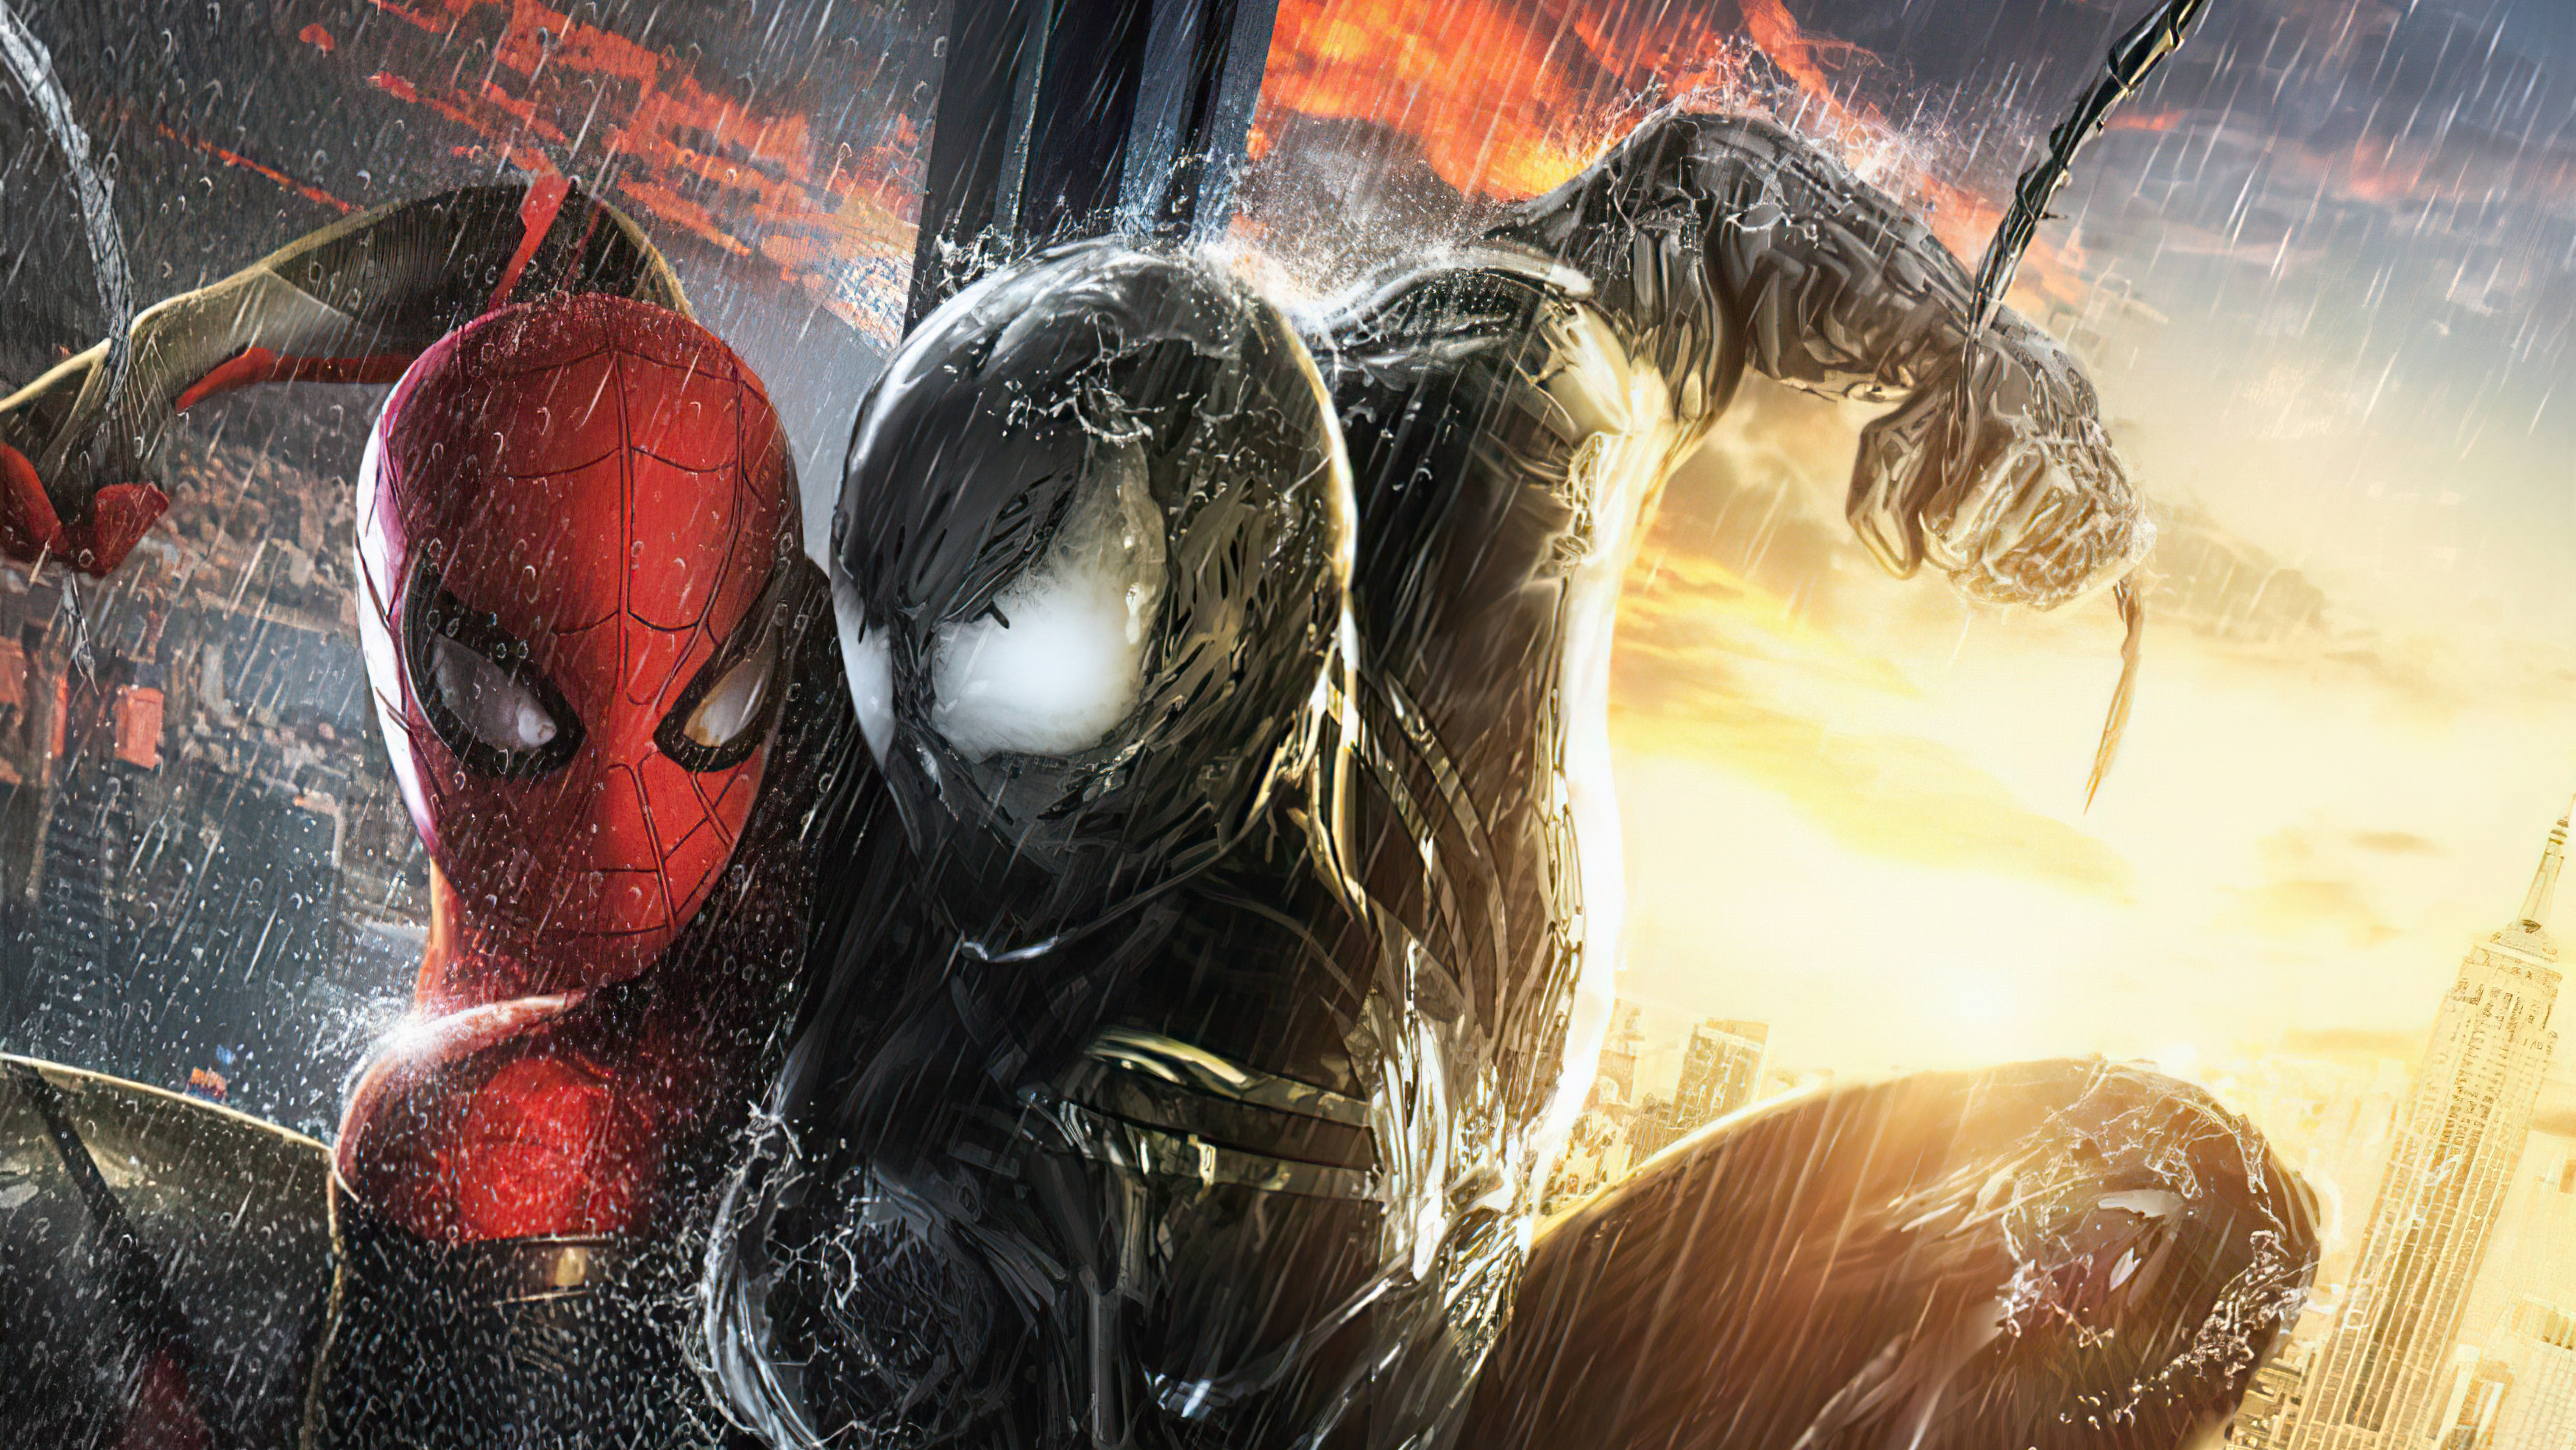 Spider Man V Venom, HD Superheroes, 4k Wallpapers, Image, Backgrounds, Phot...